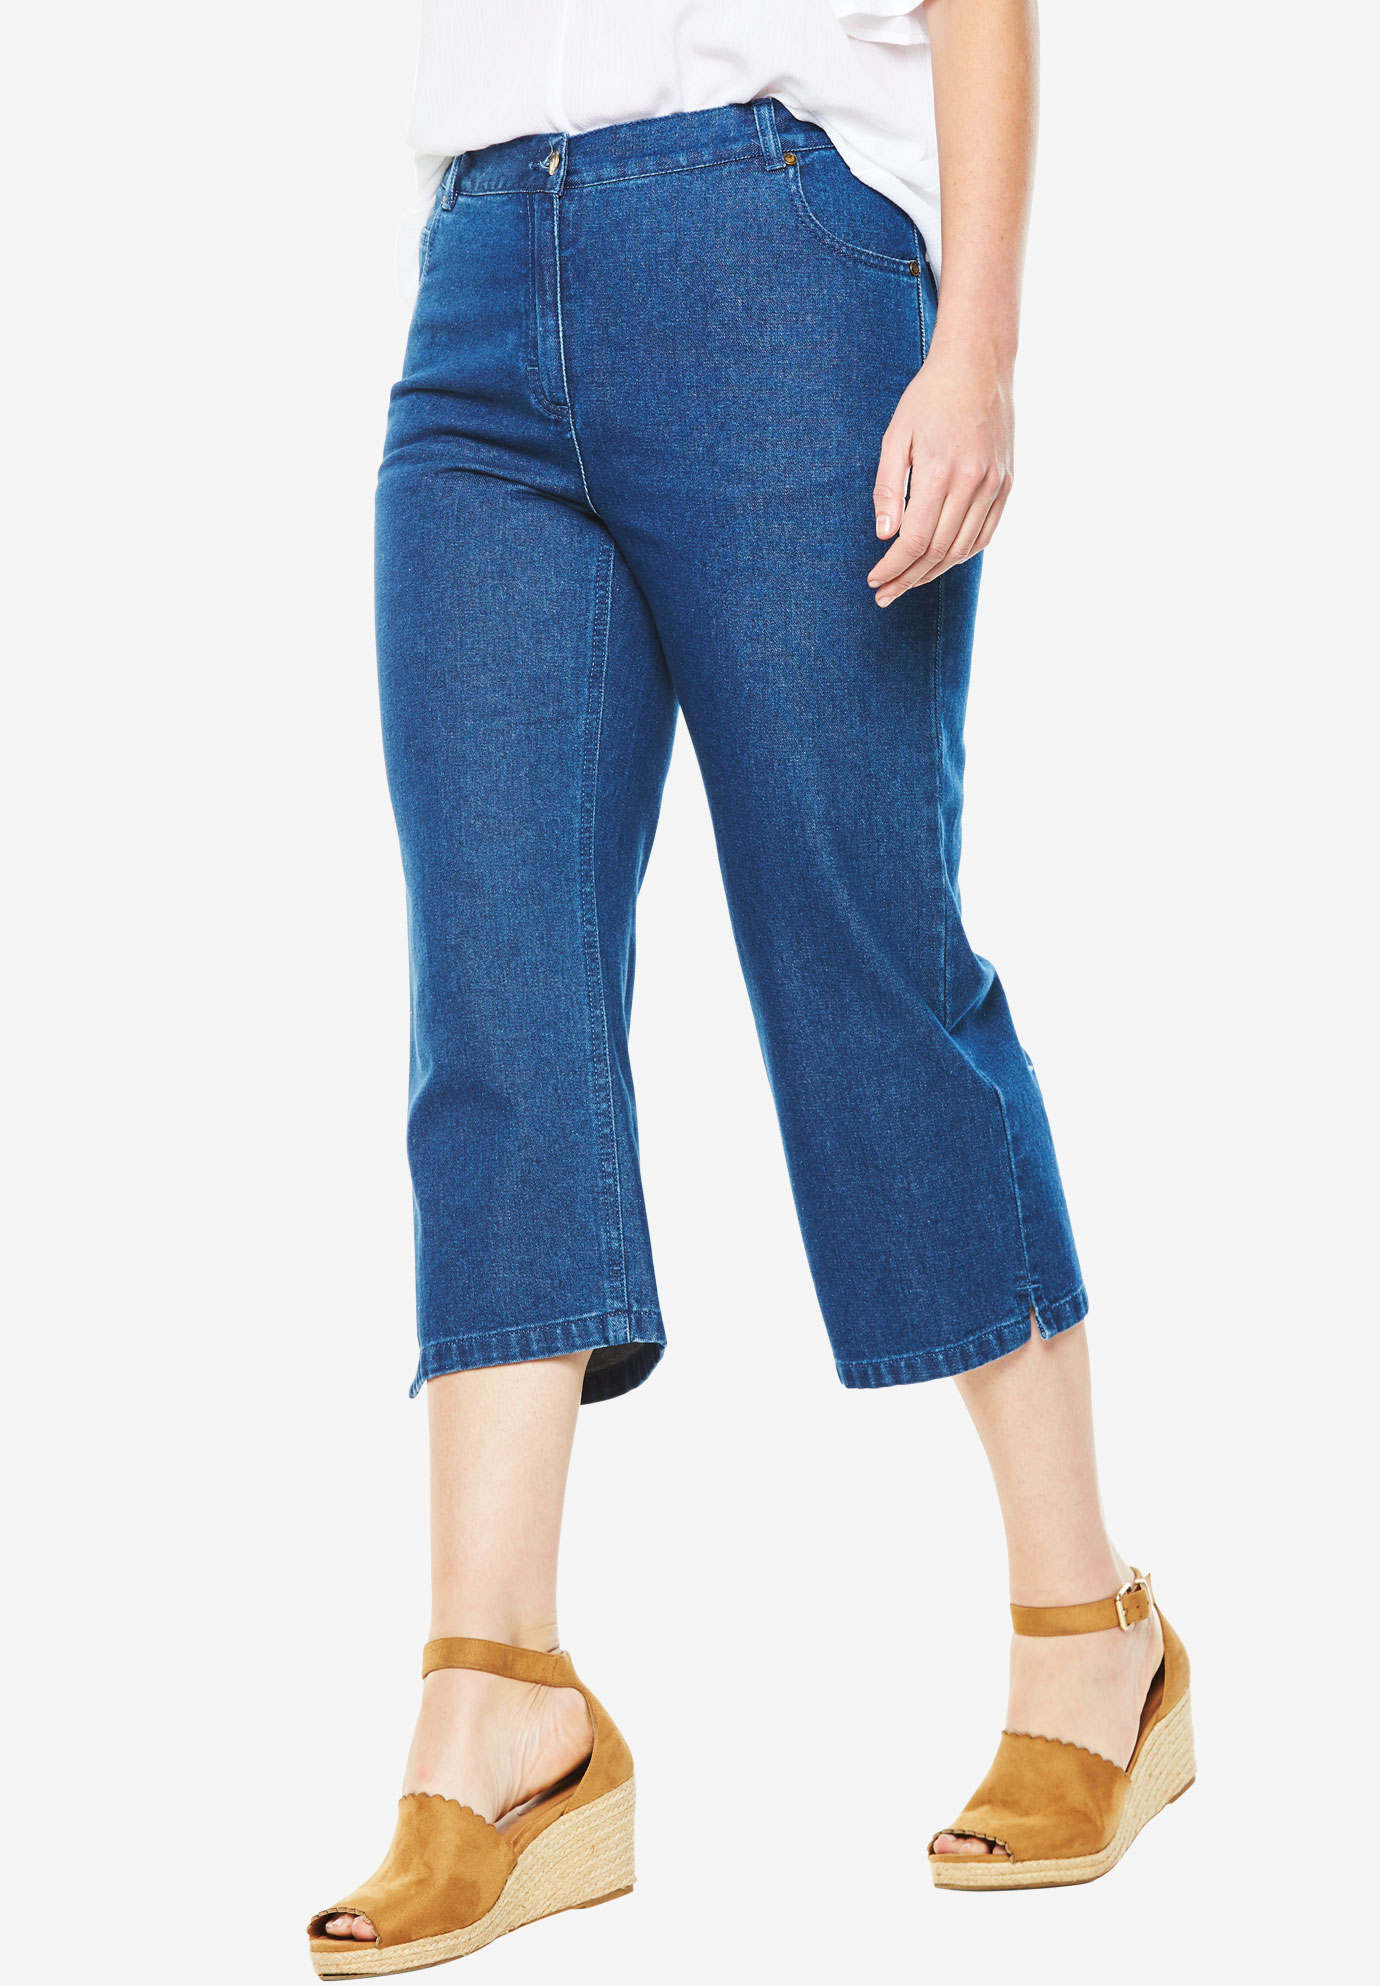 Cotton Capri Jean | Plus Size Capris & Shorts | Full Beauty